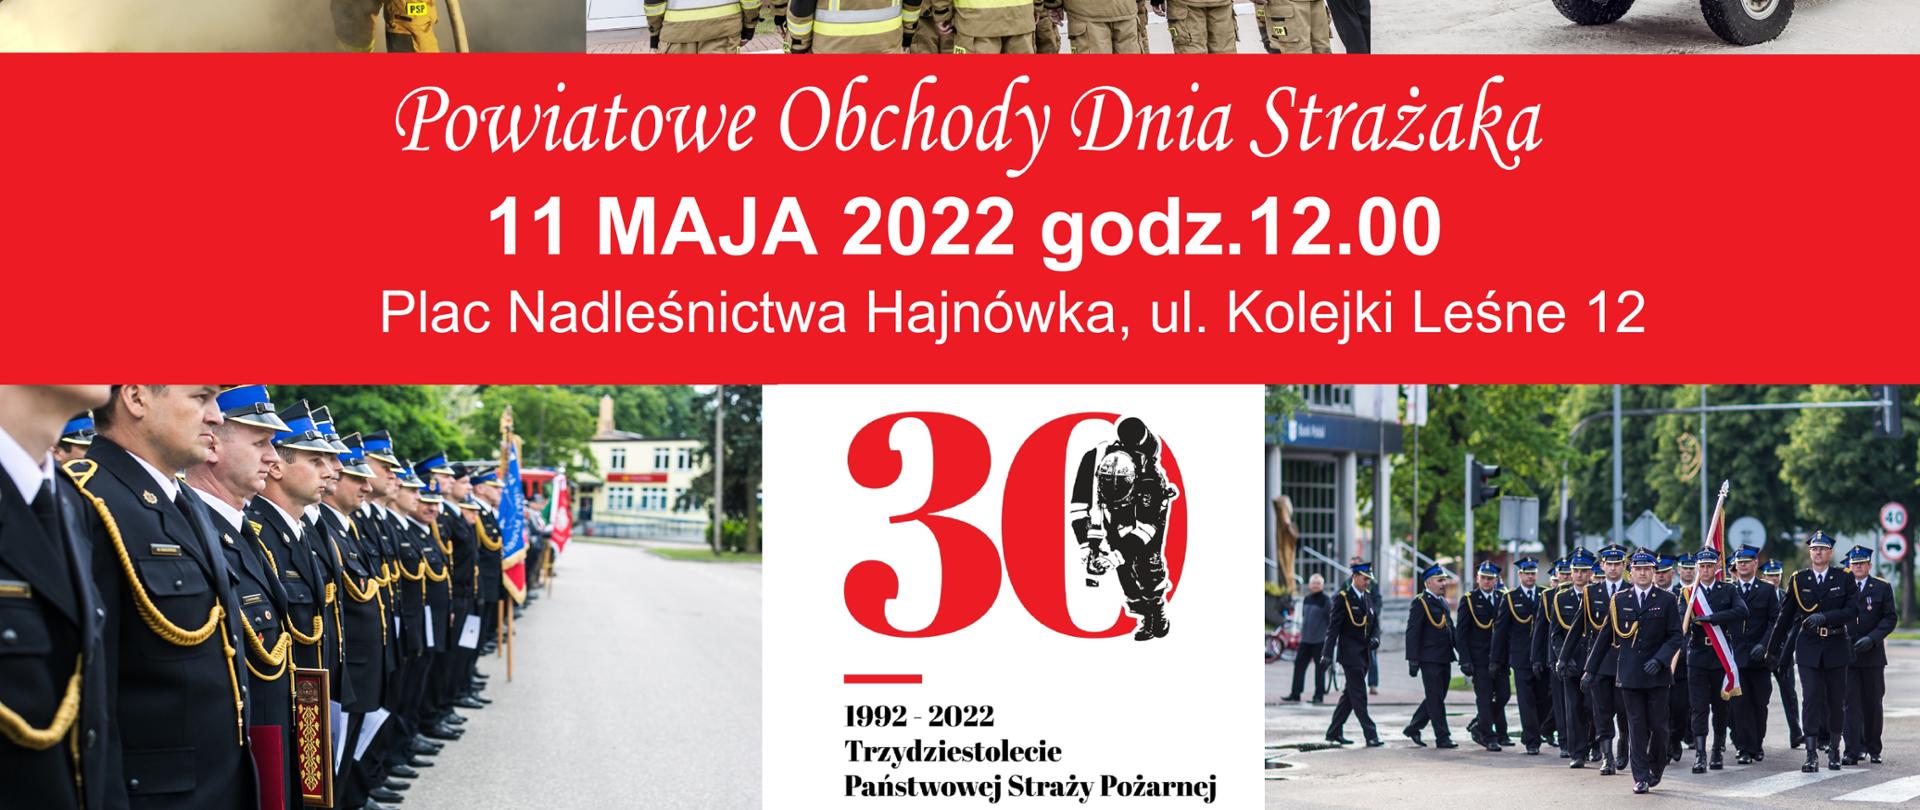 Powiatowe Obchody Dnia Strażaka 11 maja 2022, godzi. 12.00, plac Nadleśnictwa Hajnówka, ul. Kolejki Leśna 12